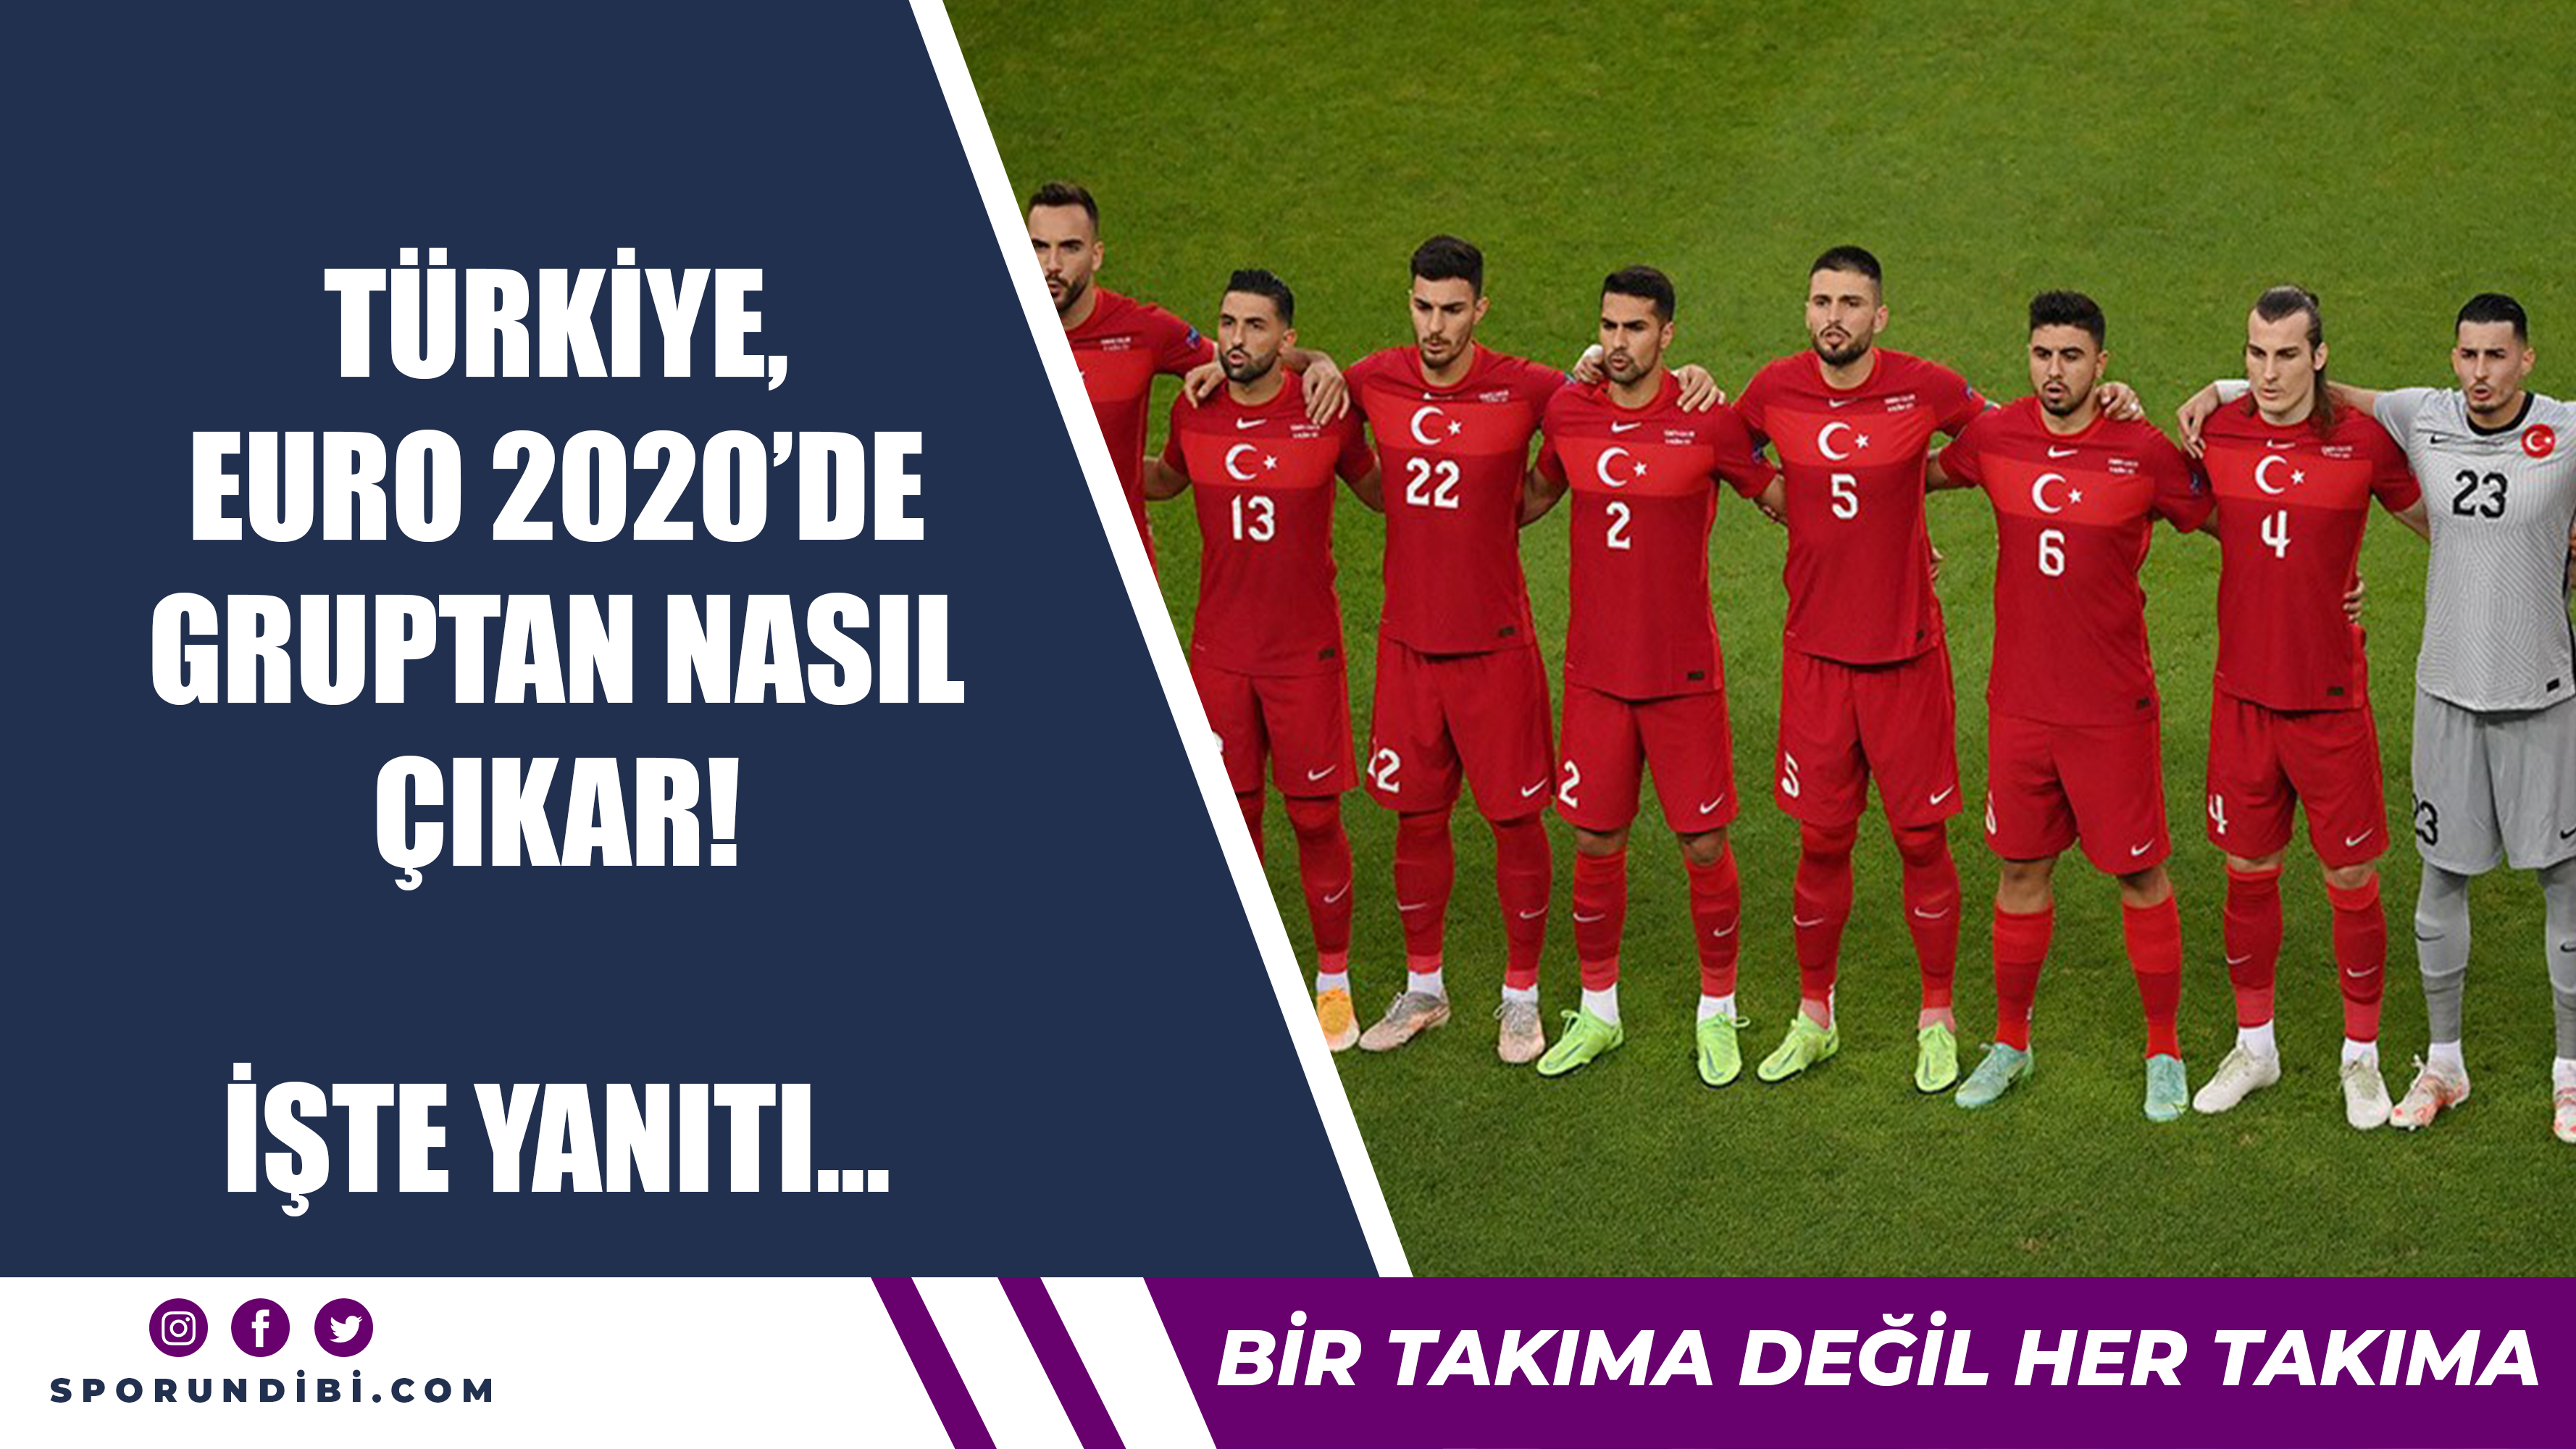 Türkiye, EURO 2020'de gruptan nasıl çıkar? İşte yanıtı...